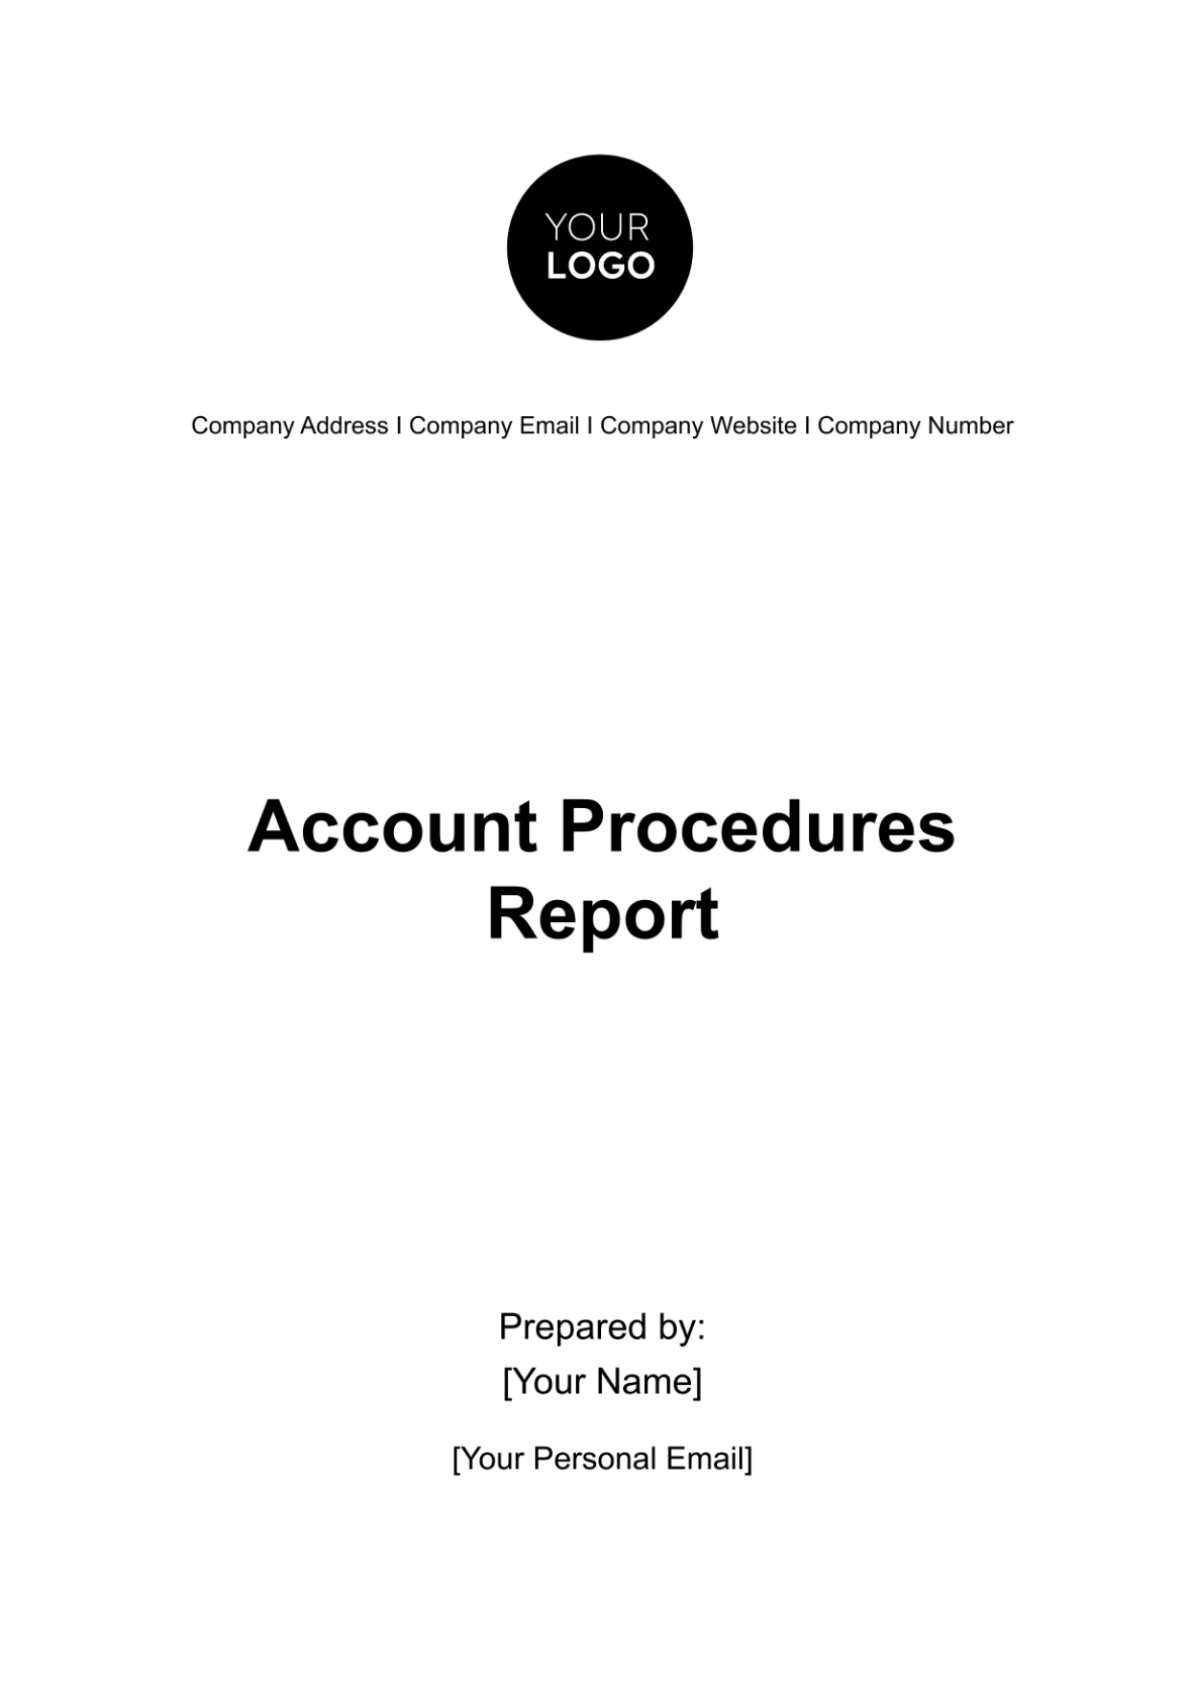 Account Procedures Report Template